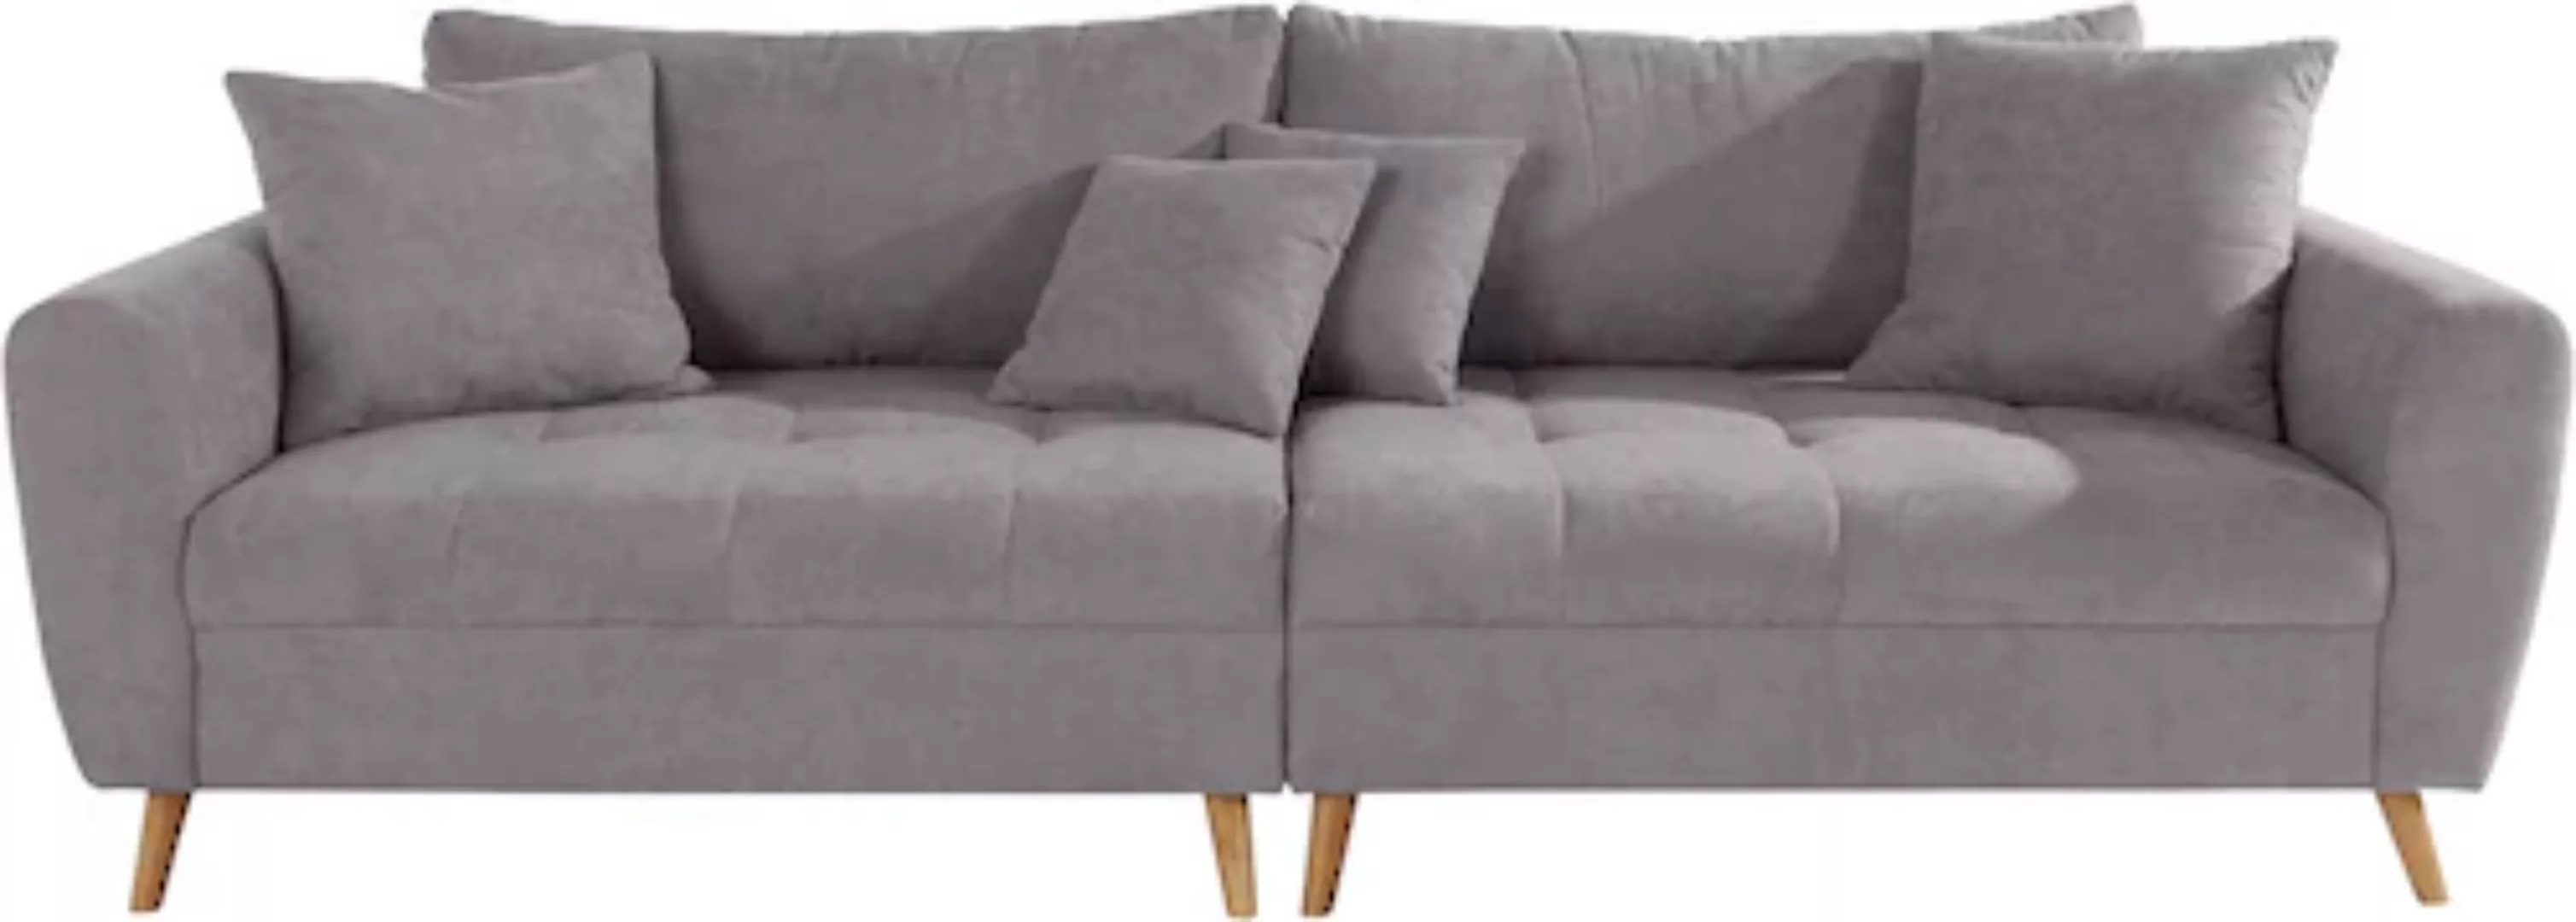 Home affaire Big-Sofa "Penelope Luxus" günstig online kaufen